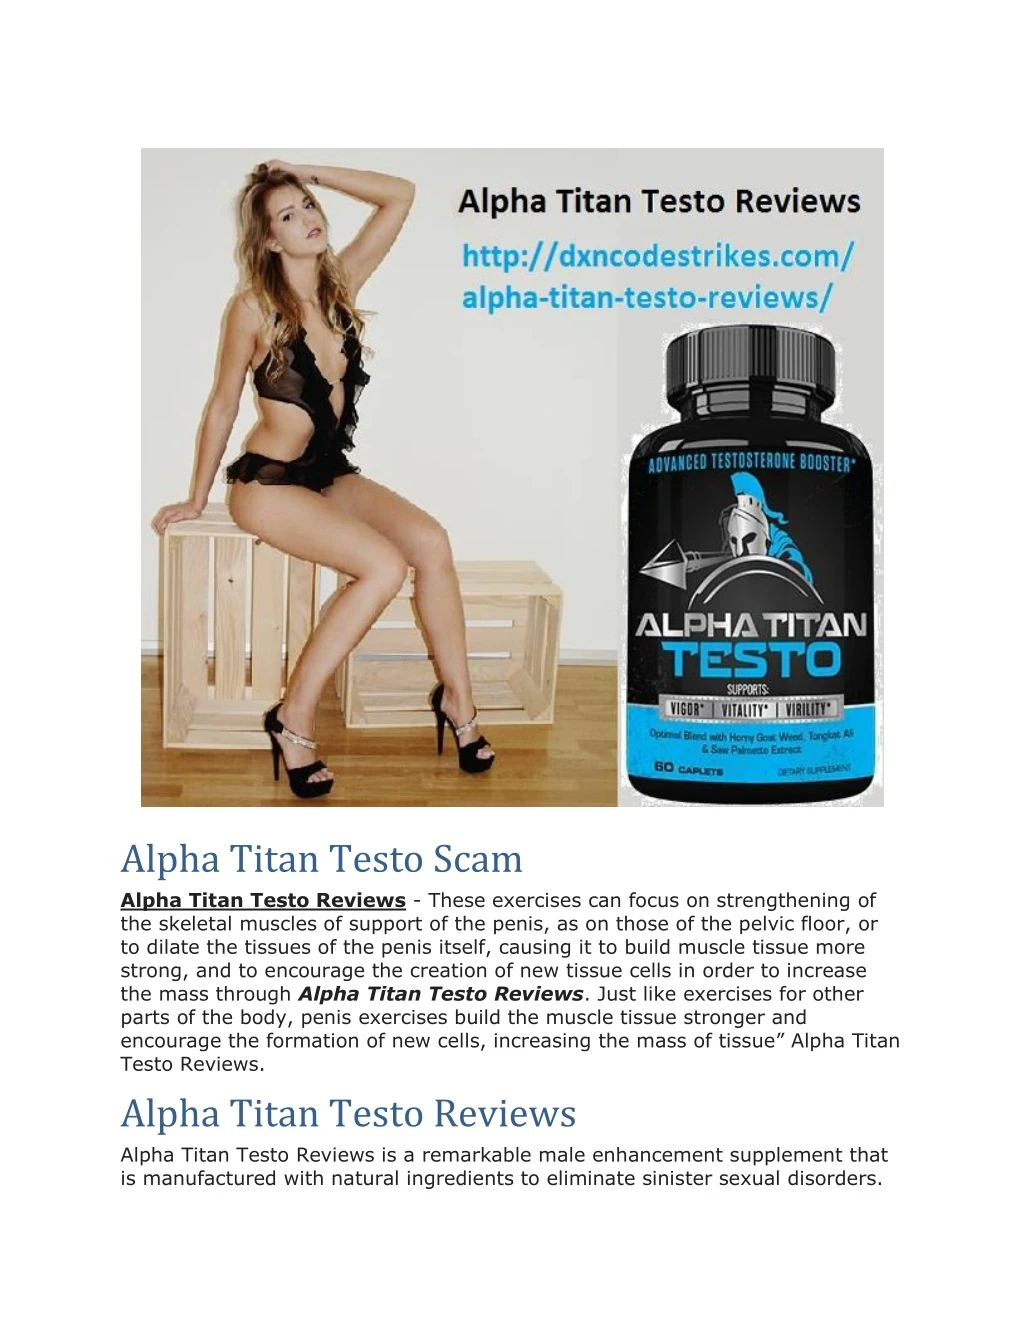 alpha titan testo scam alpha titan testo reviews